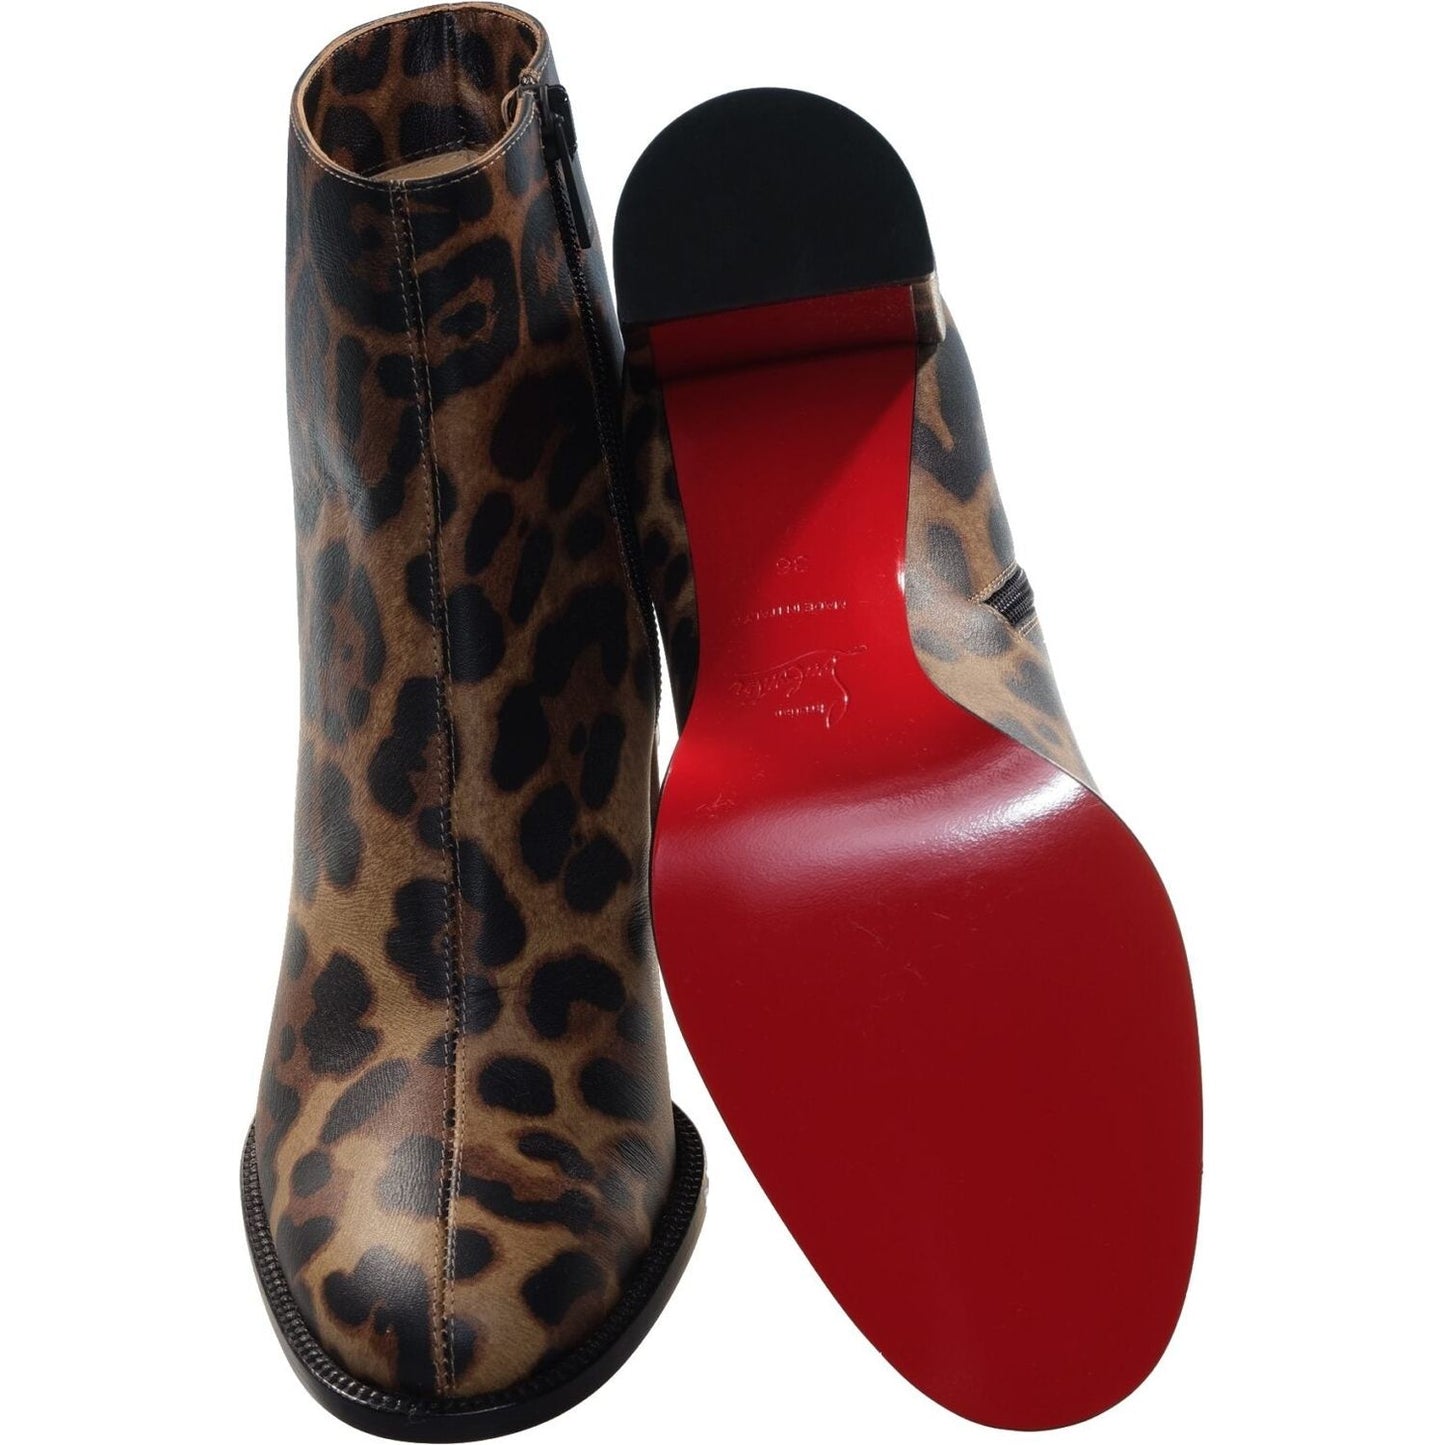 Adoxa 70 Brown Leopard Print High Heel Boot